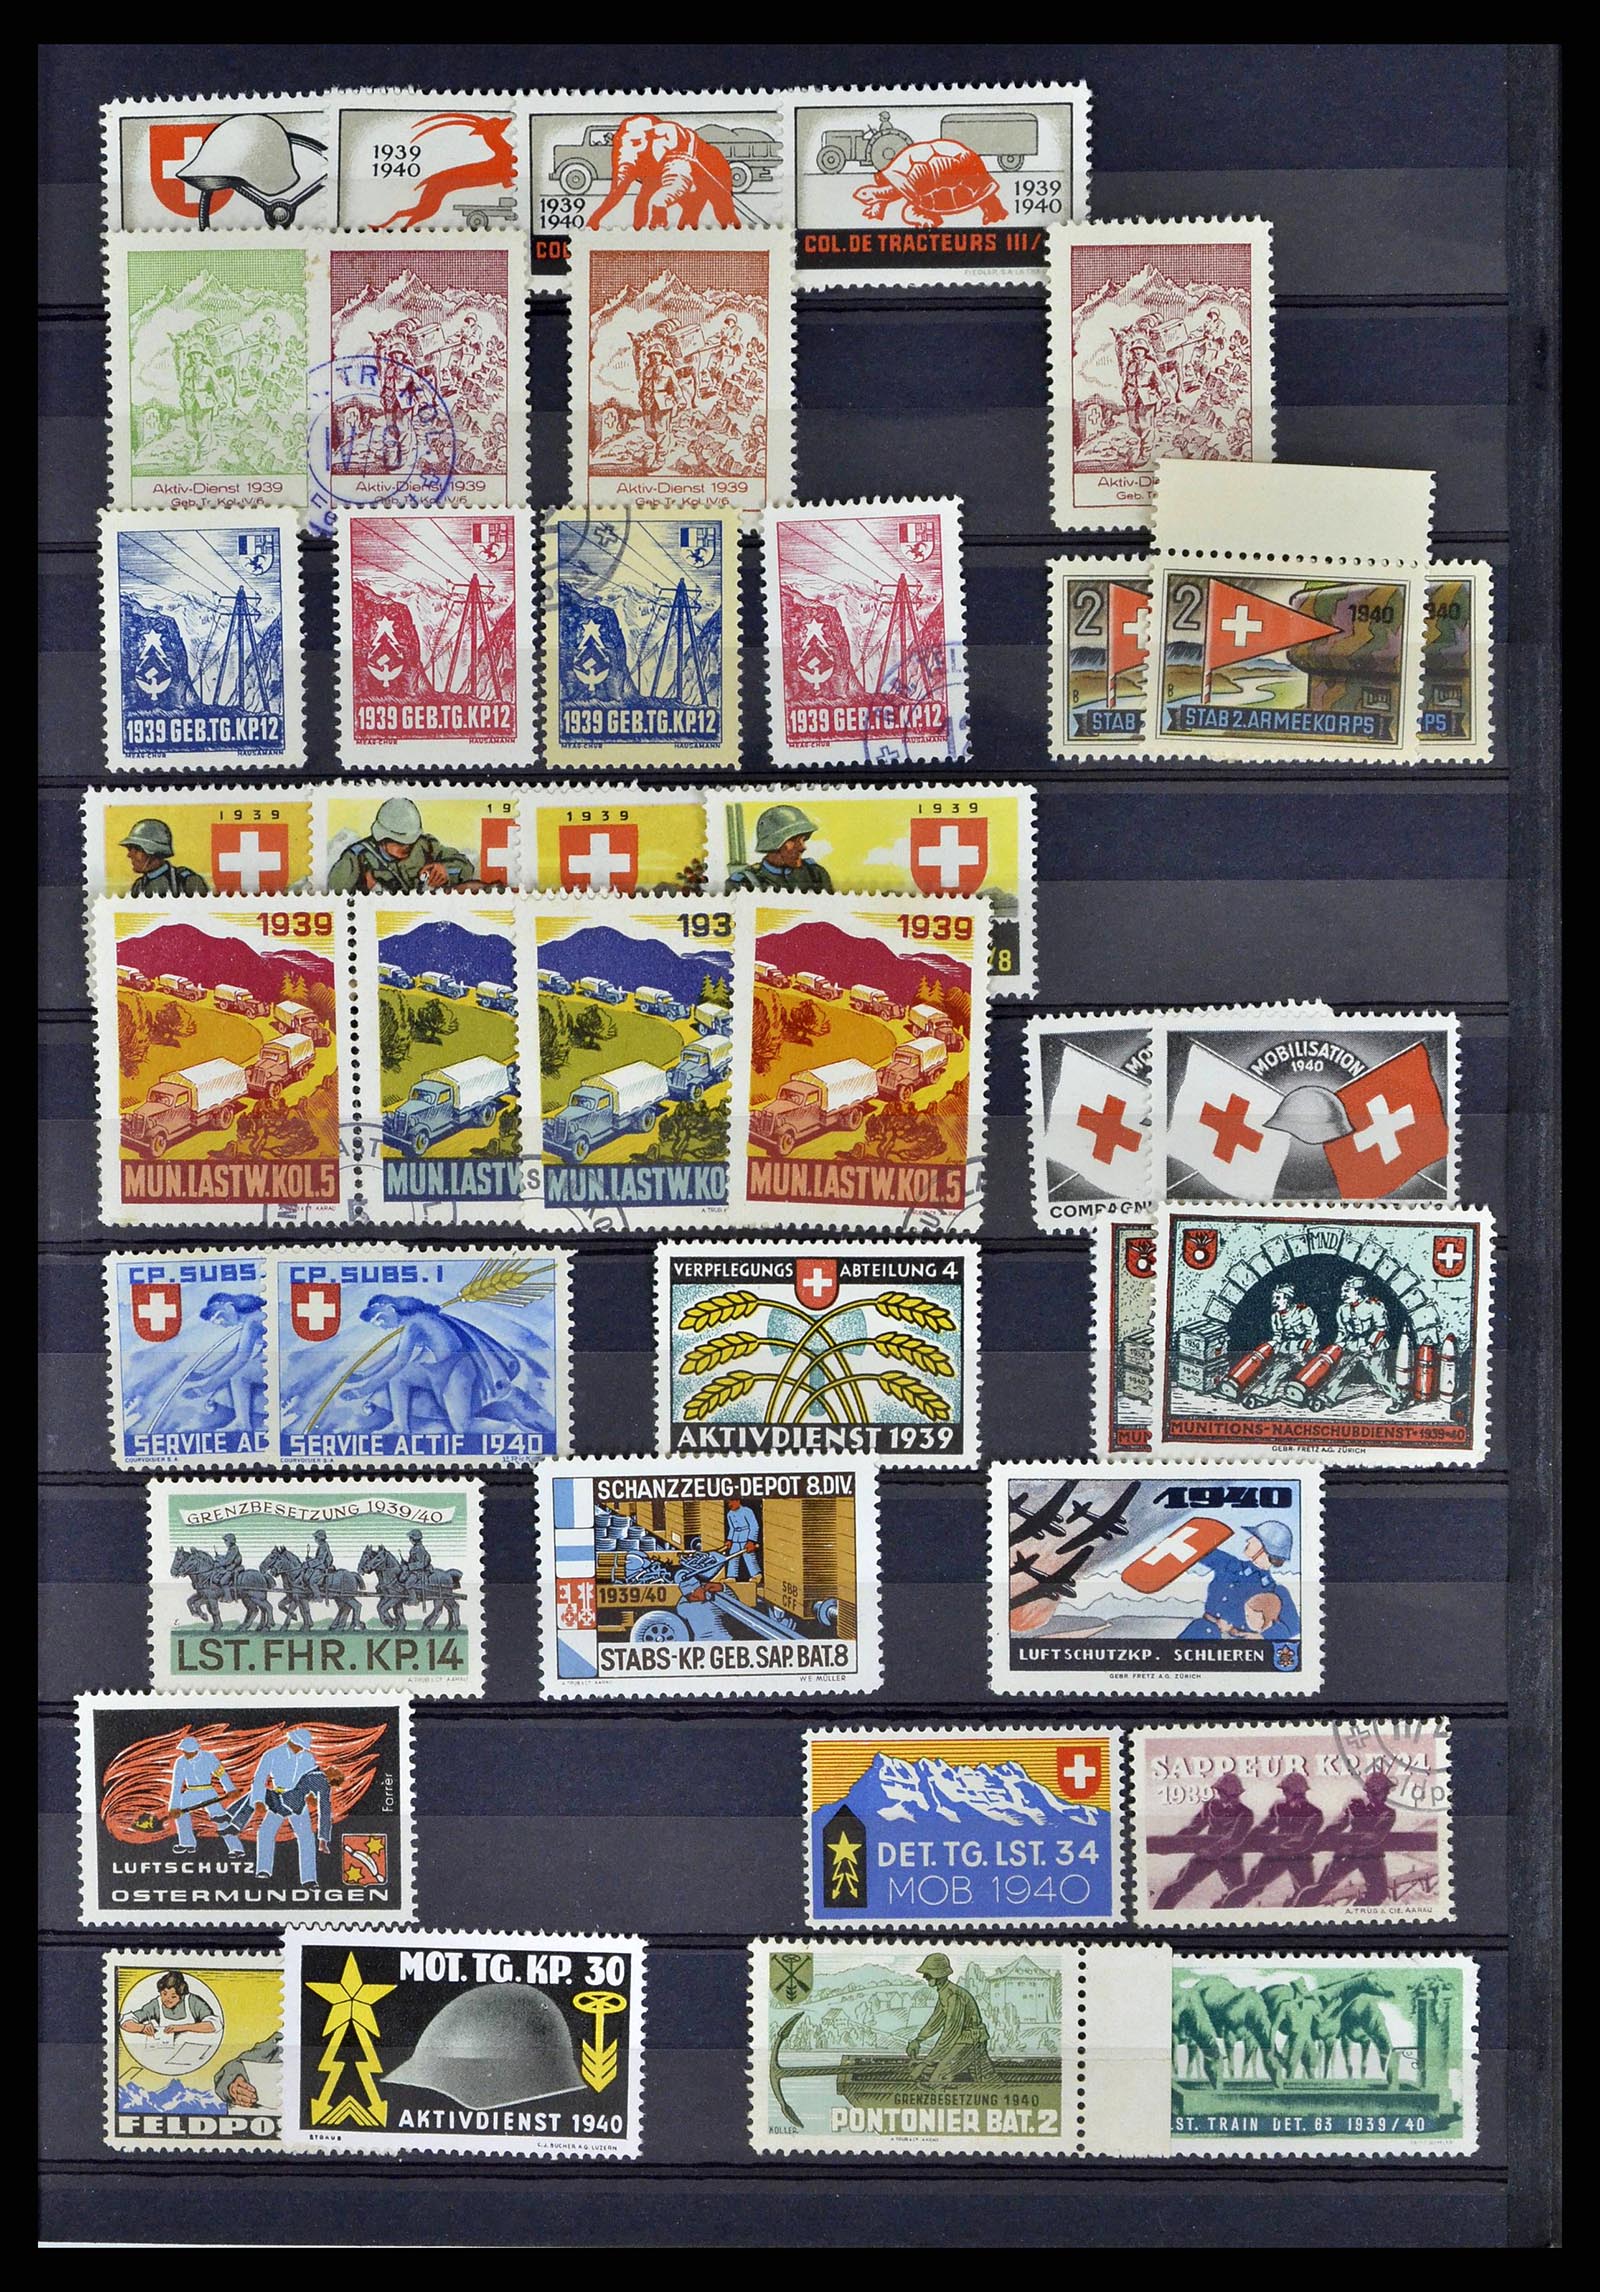 38768 0053 - Stamp collection 38768 Switzerland soldierstamps 1914-1945.